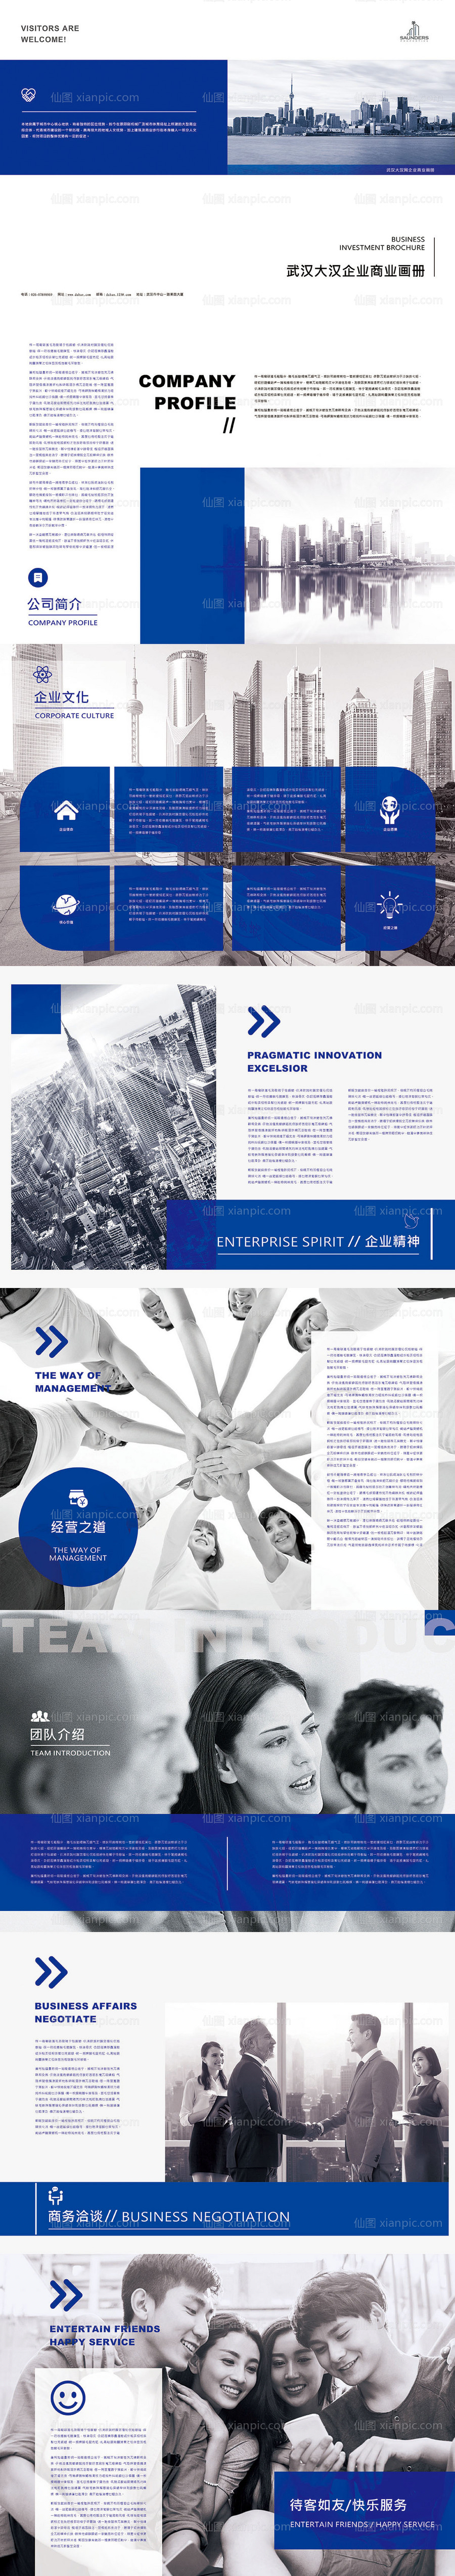 素材乐-蓝色大气简洁商务企业文化产品手册